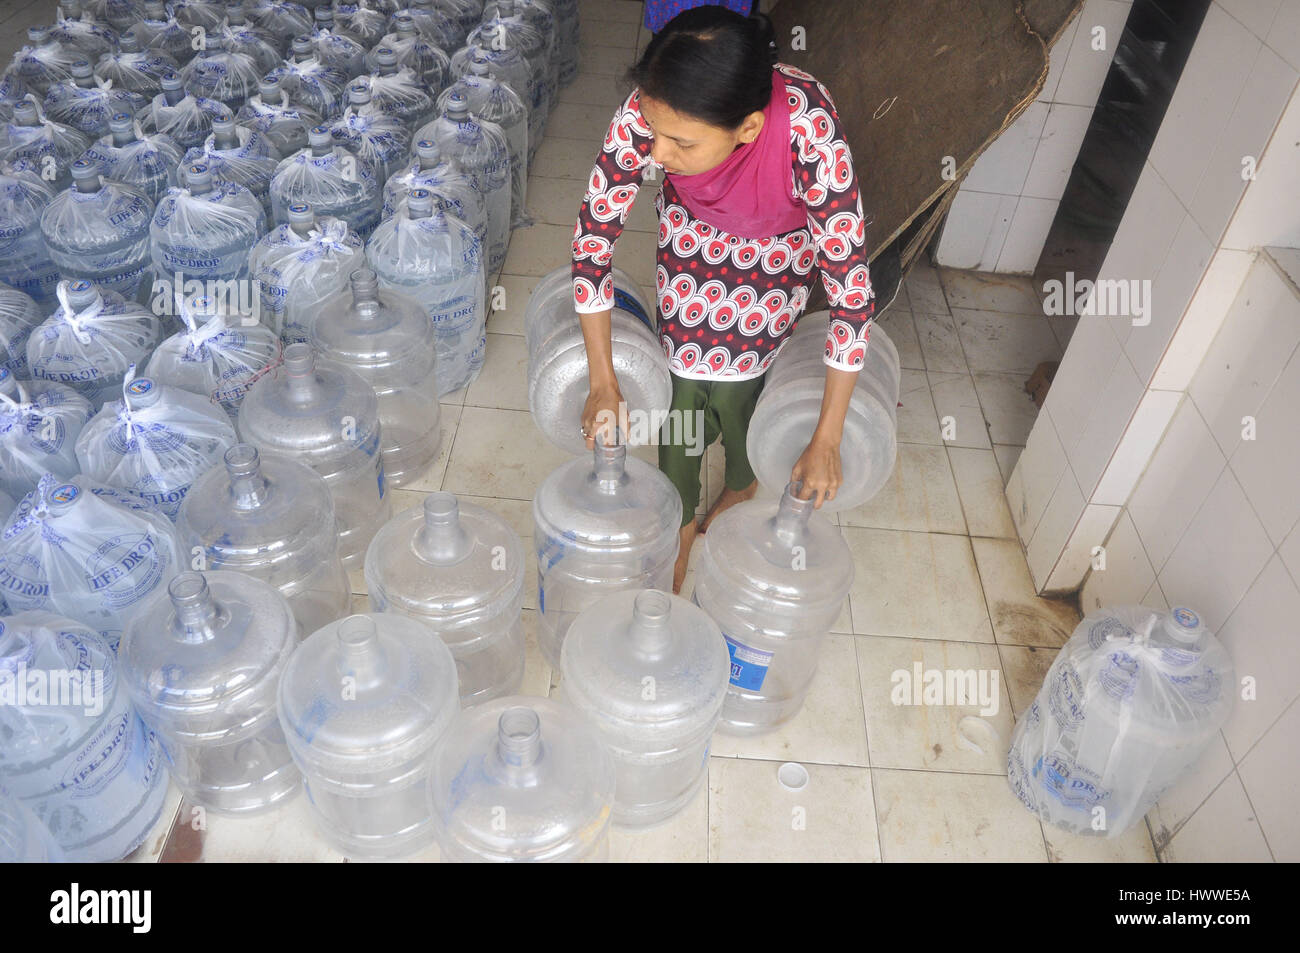 Weltwassertag in Indien - 22.03.2017 - Indien / Tripura / Agartala - Leute arbeiten an einer Packwadge Trinkwasser-Fabrik auf dem World Water Day in Agartala, Hauptstadt des nordöstlichen Bundesstaates Tripura.                                                              Weltwassertag darum am 22. März jedes Jahr Maßnahmen ergreifen, um die Wasserkrise zu bewältigen. Heute gibt es über 663 Millionen Menschen leben, ohne eine sichere Wasserversorgung in der Nähe von Haus, verbringen unzählige Stunden Schlange oder trekking zum weit entfernten Quellen und Umgang mit den gesundheitlichen Auswirkungen der Verwendung von verunreinigten Wassers.   -Abhisek Stockfoto